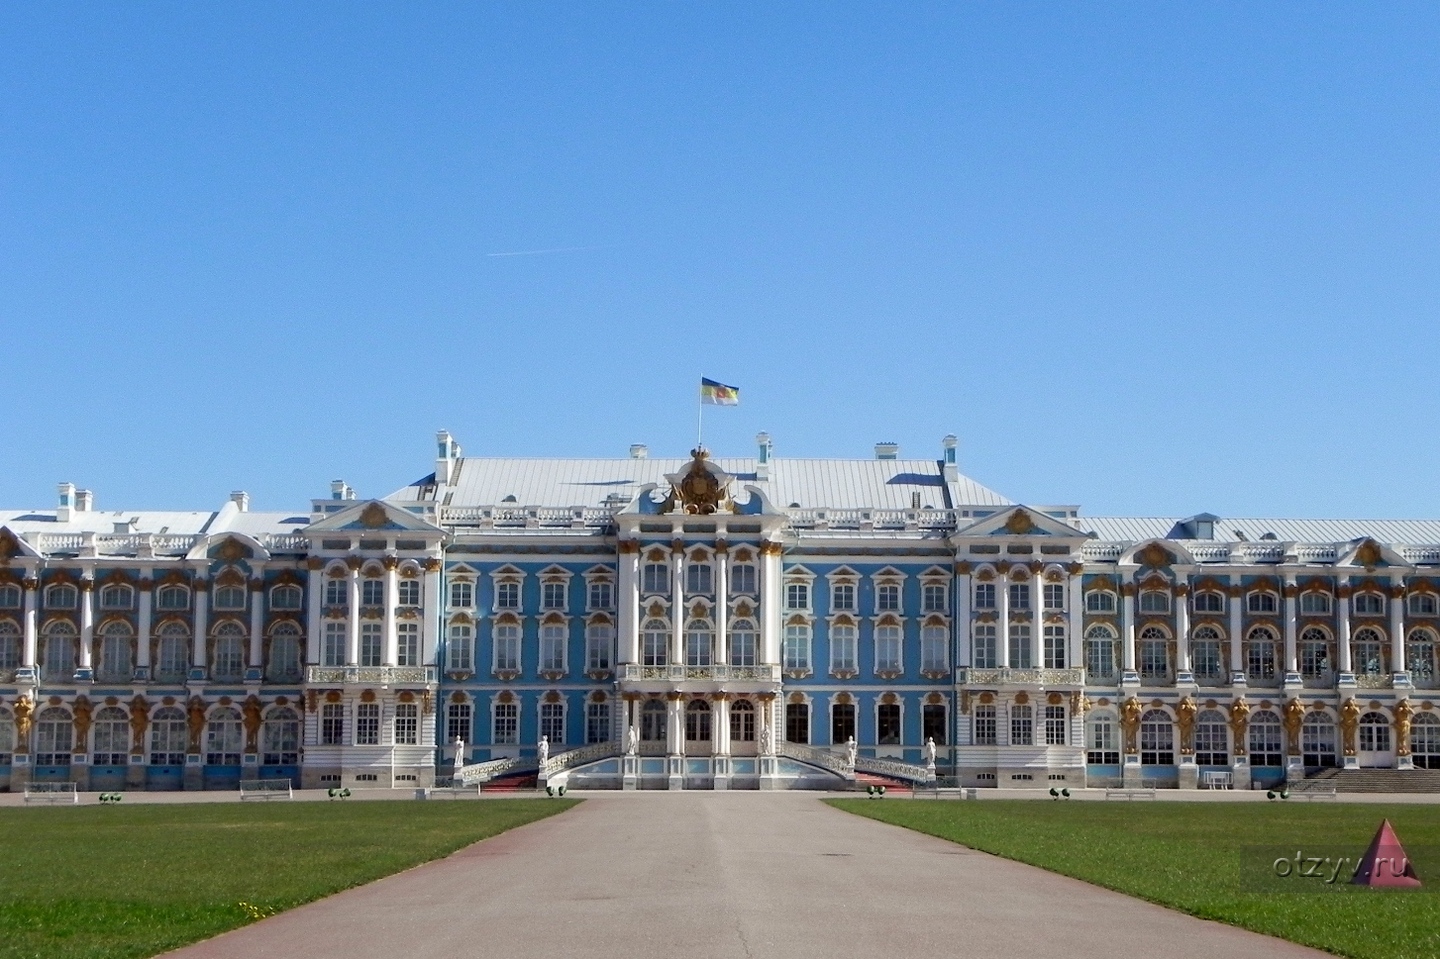 Царскосельский дворец в Санкт-Петербурге